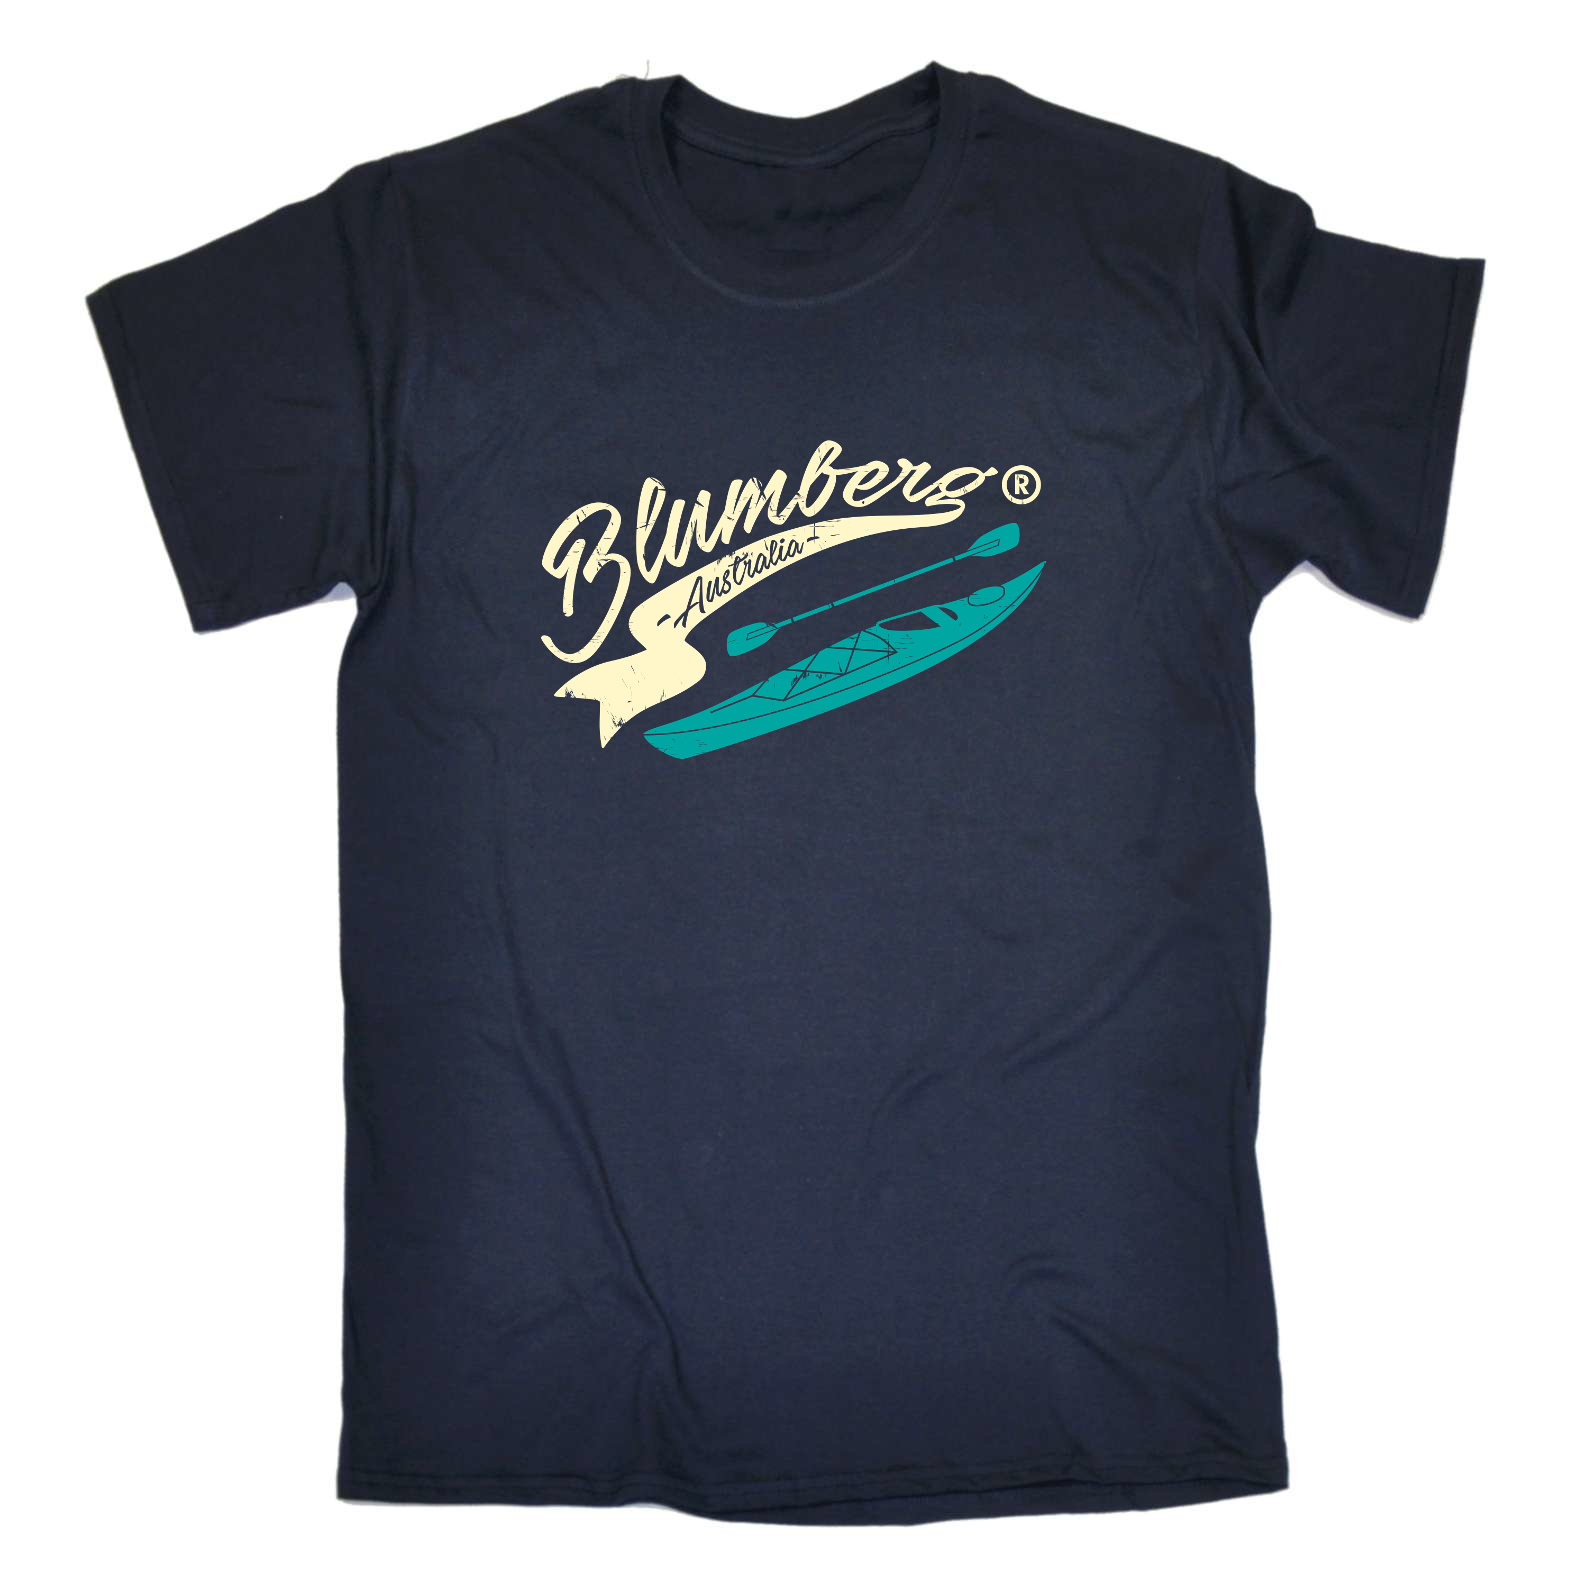 Distressed Blumberg Australia Fashion Brand T-Shirt Mens tee TShirt 